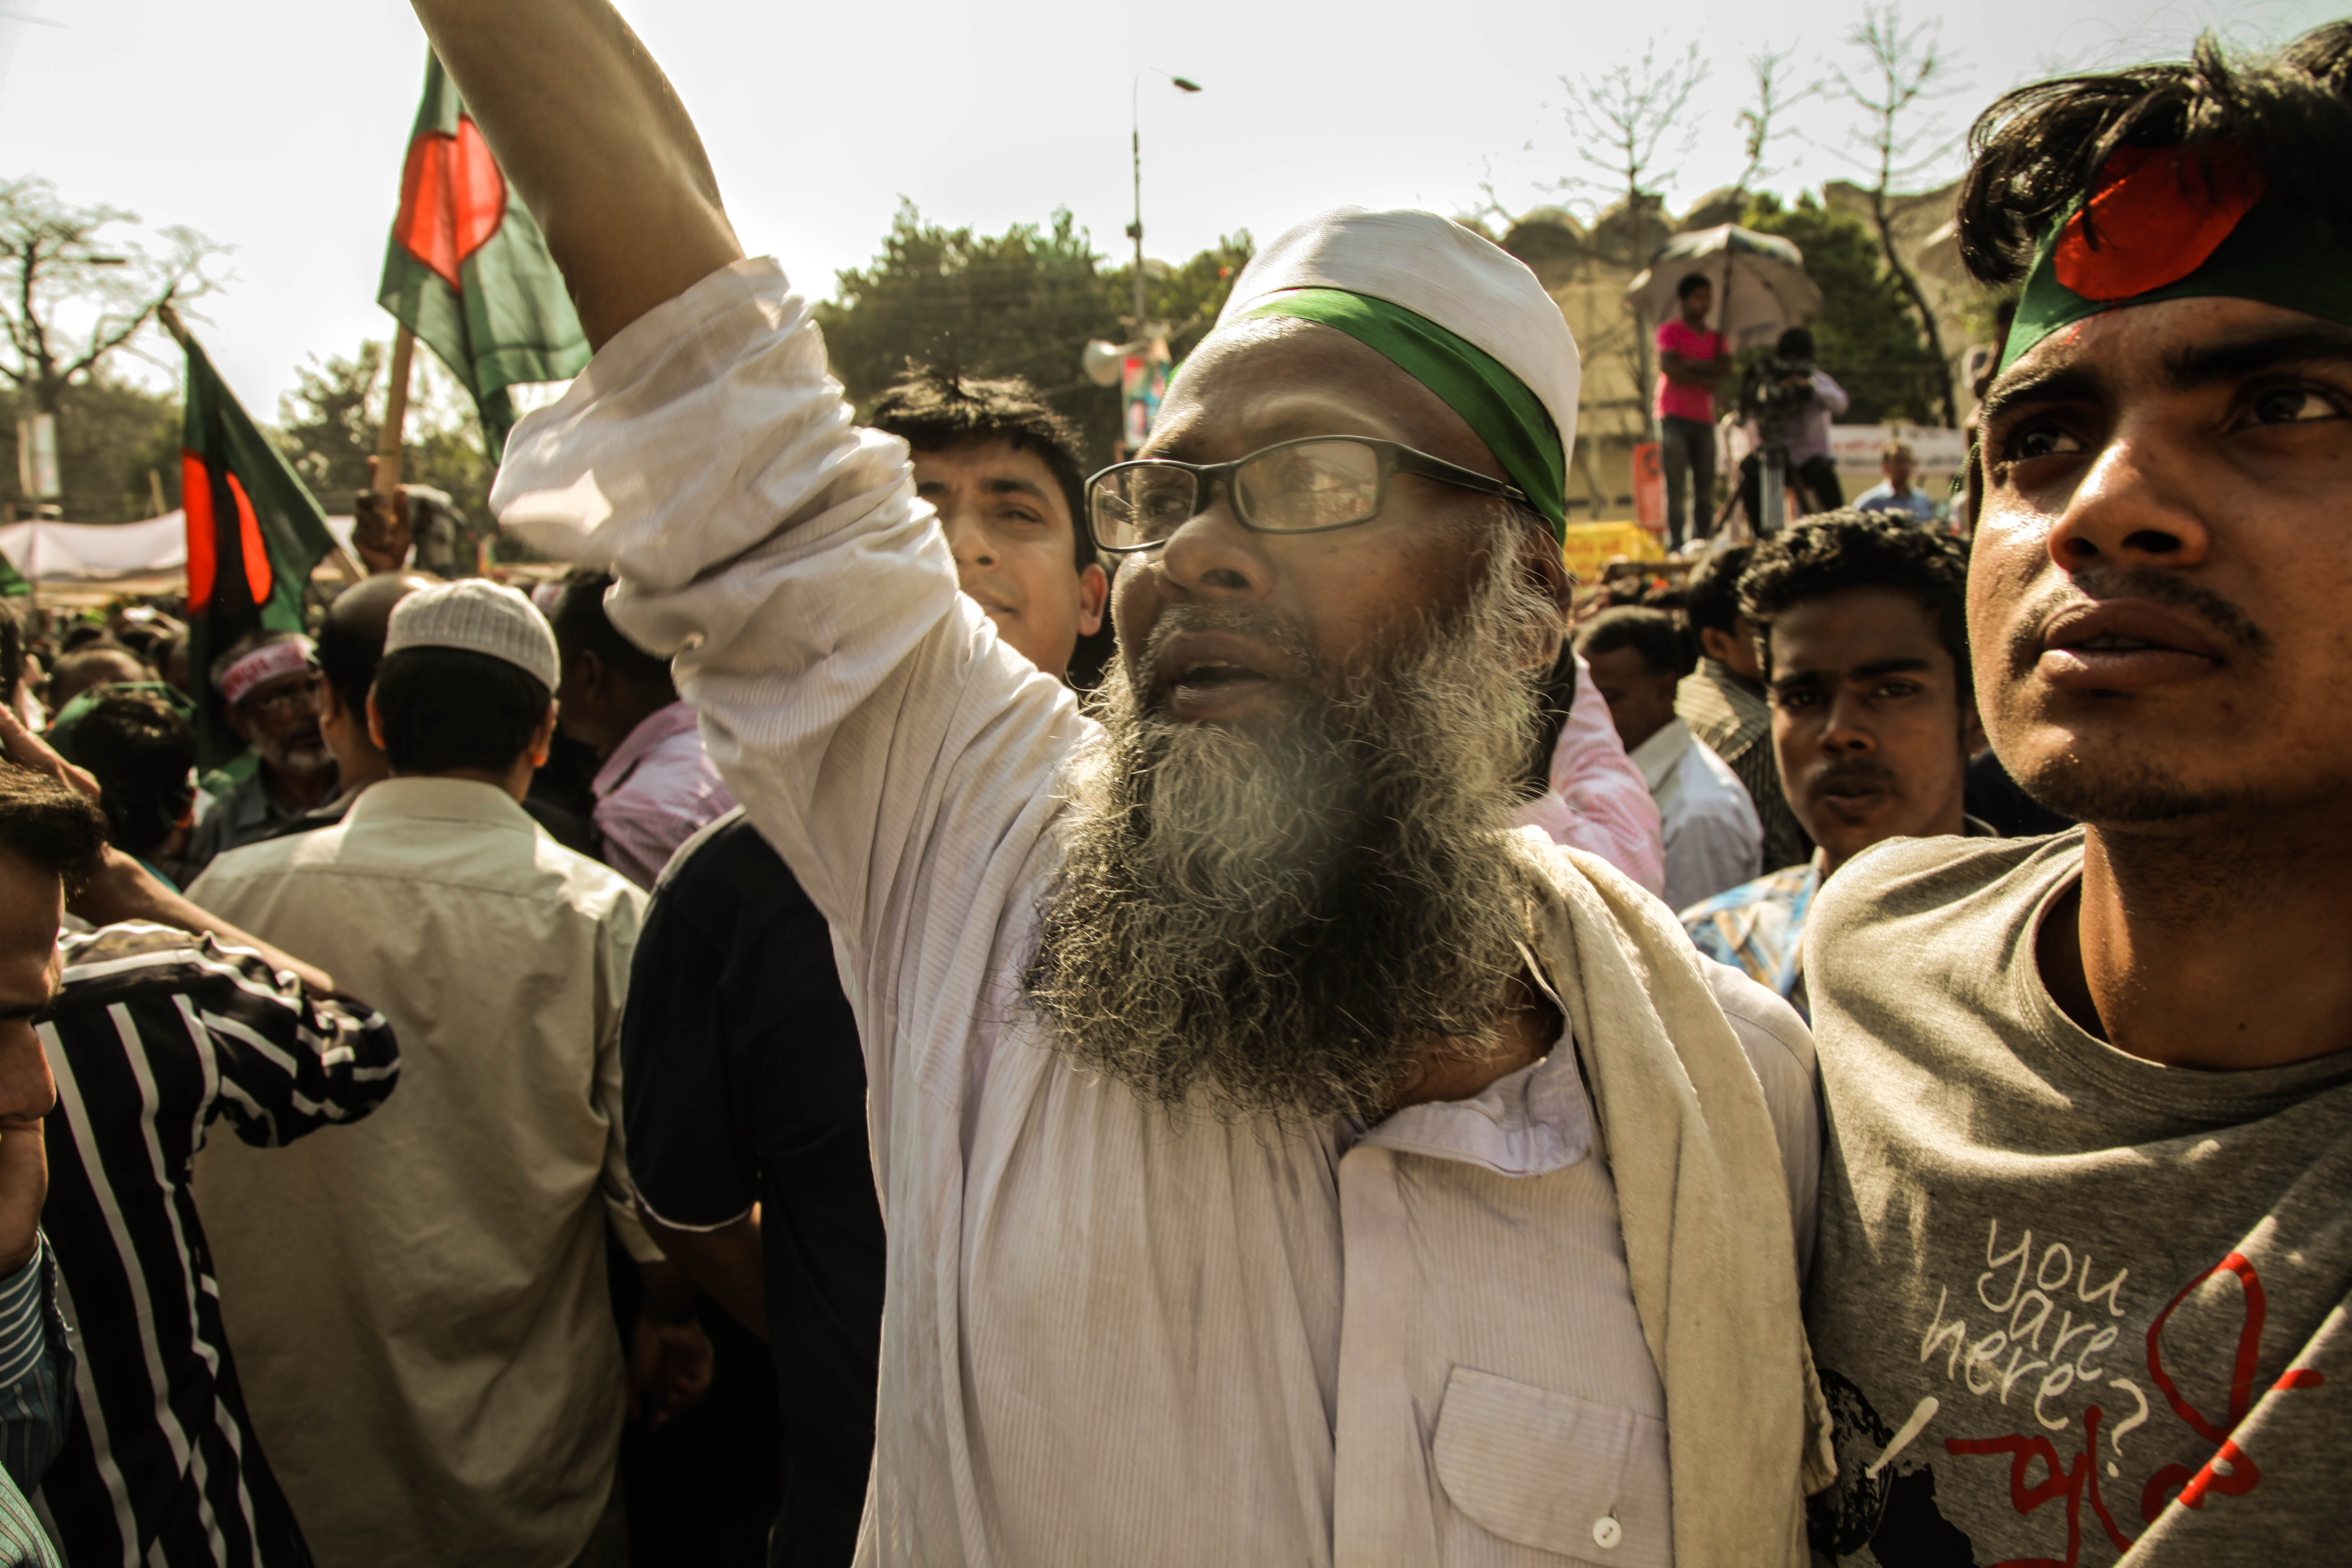 Imagining Bangladesh: Contested Narratives